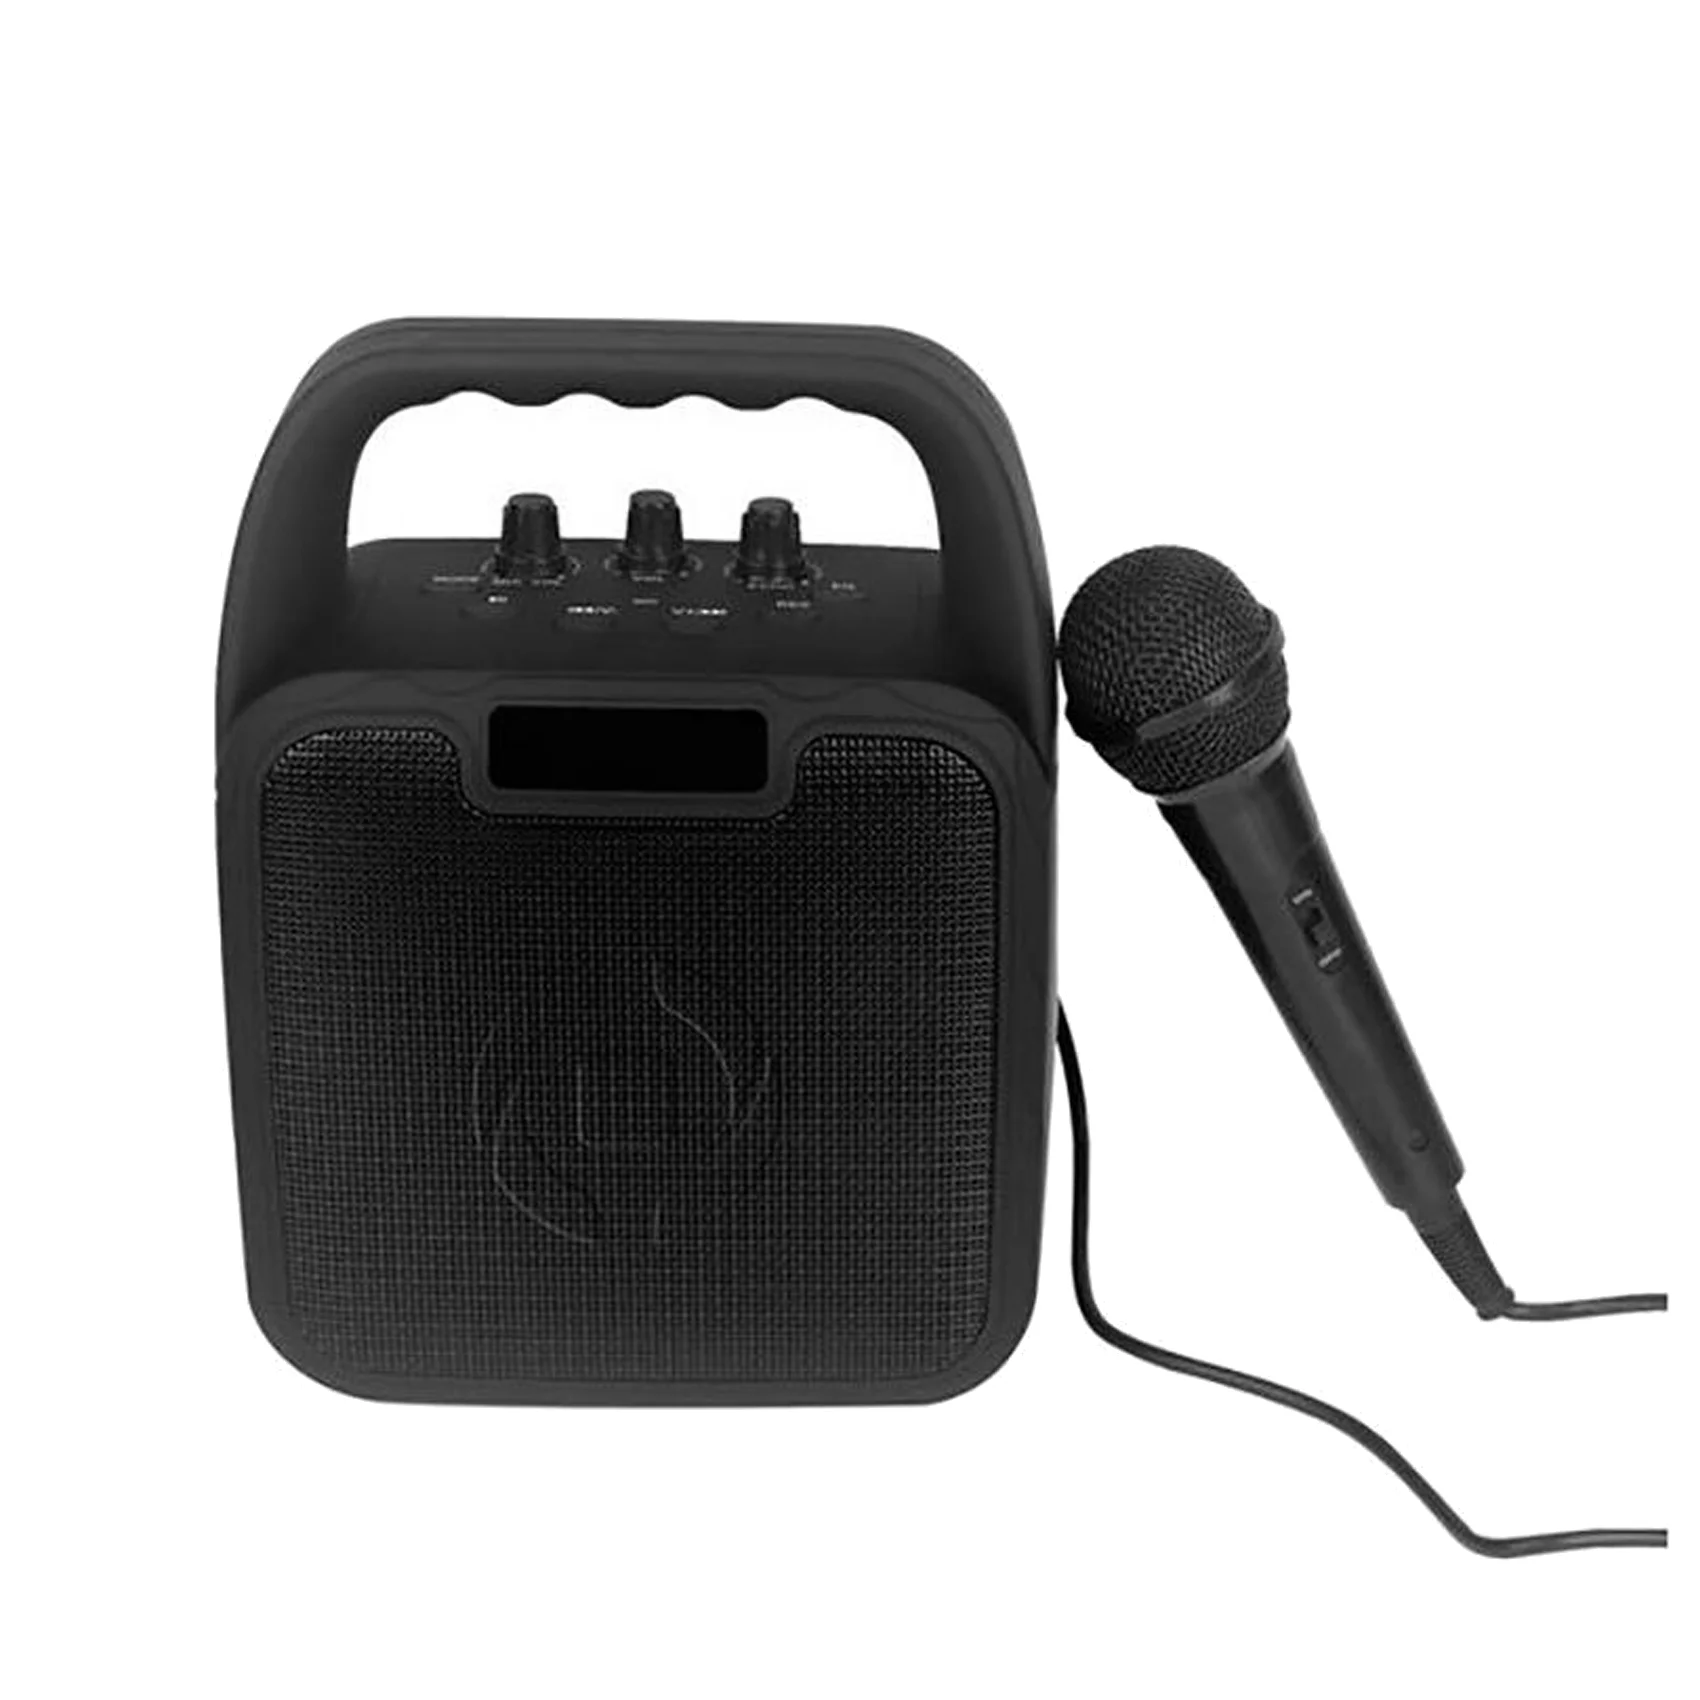 Celly KidsParty højttaler med mikrofon, sort Køb online til kun kr. 500.95